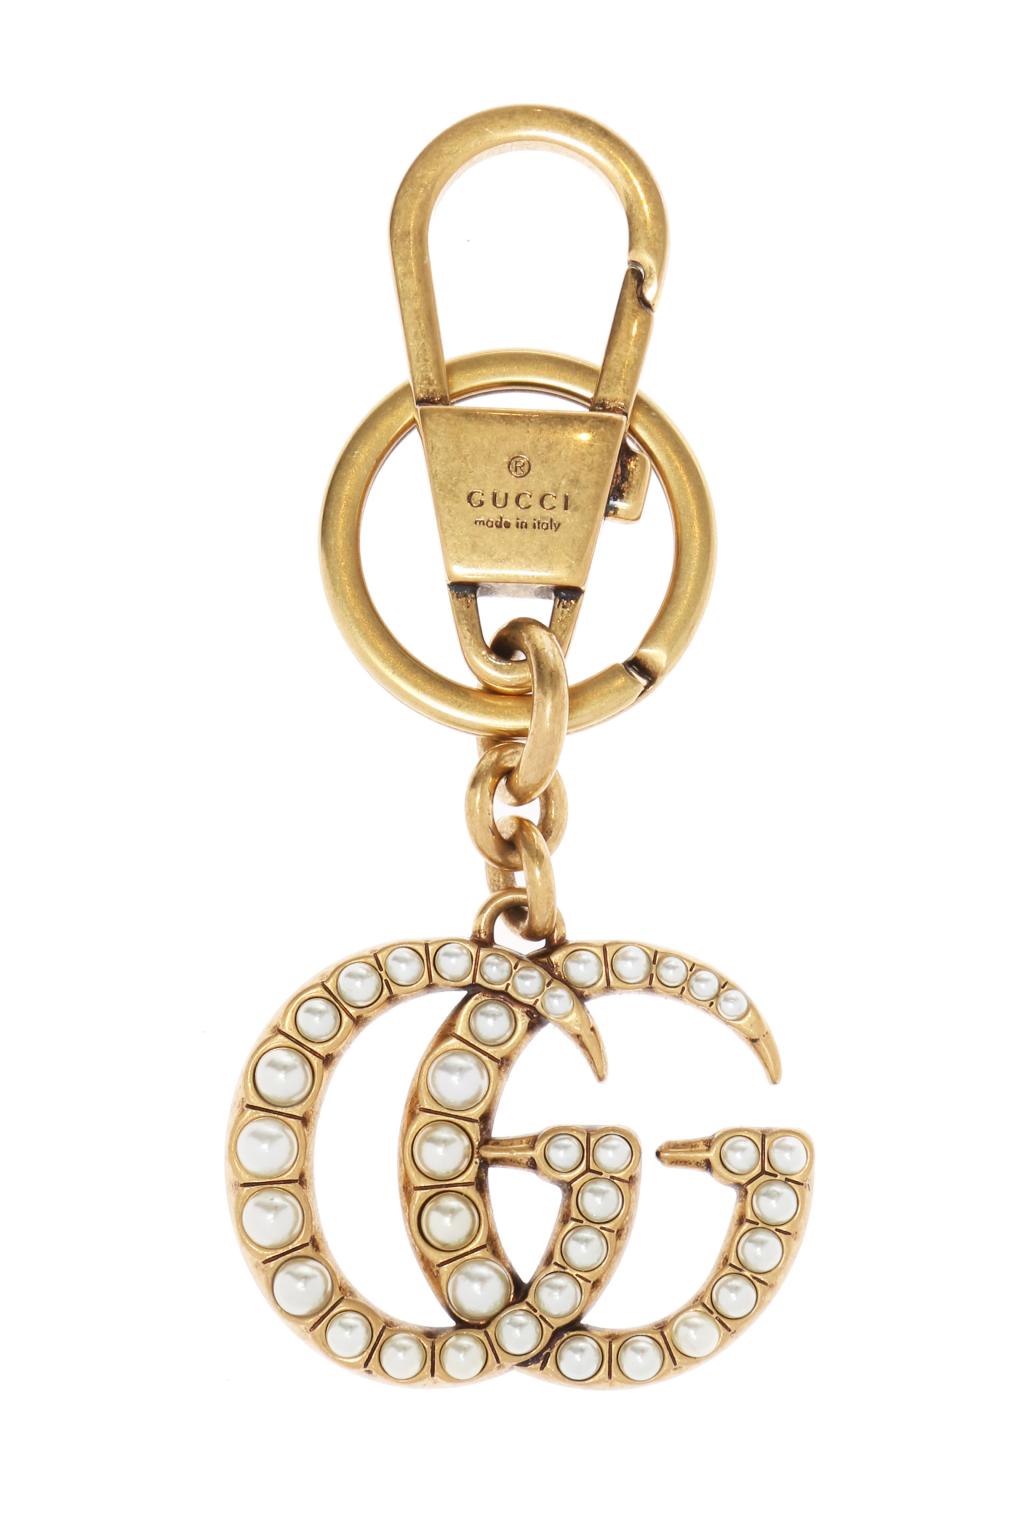 Gucci Brelok z logo wysadzanym perłami